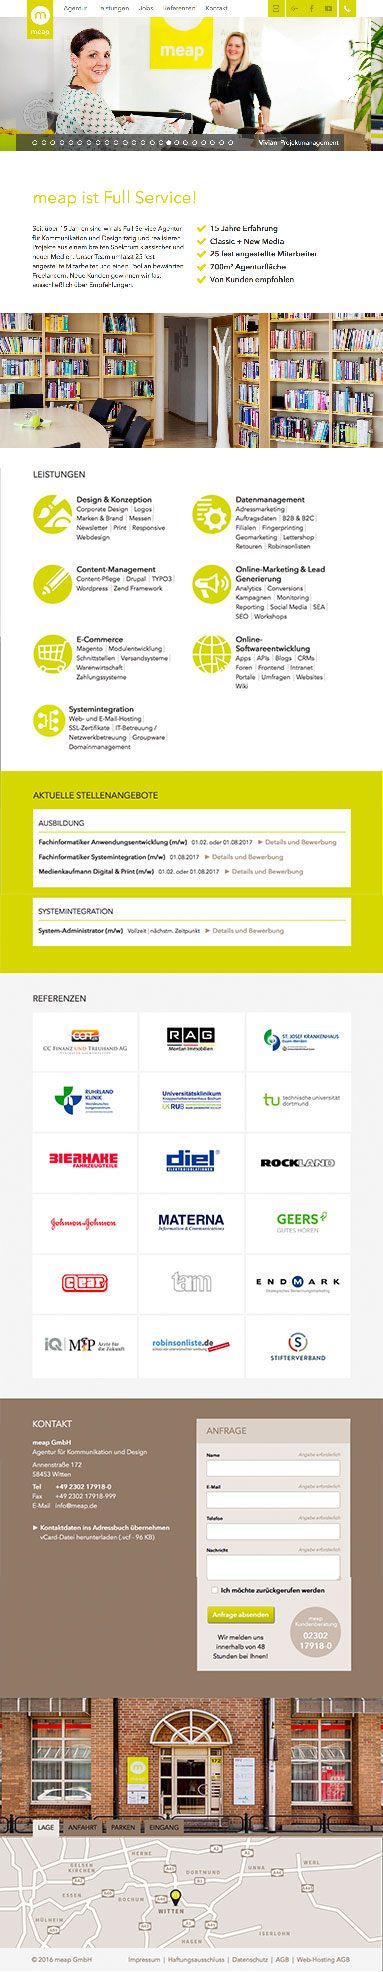 Internetseite Fullservice Agentur meap GmbH in Witten